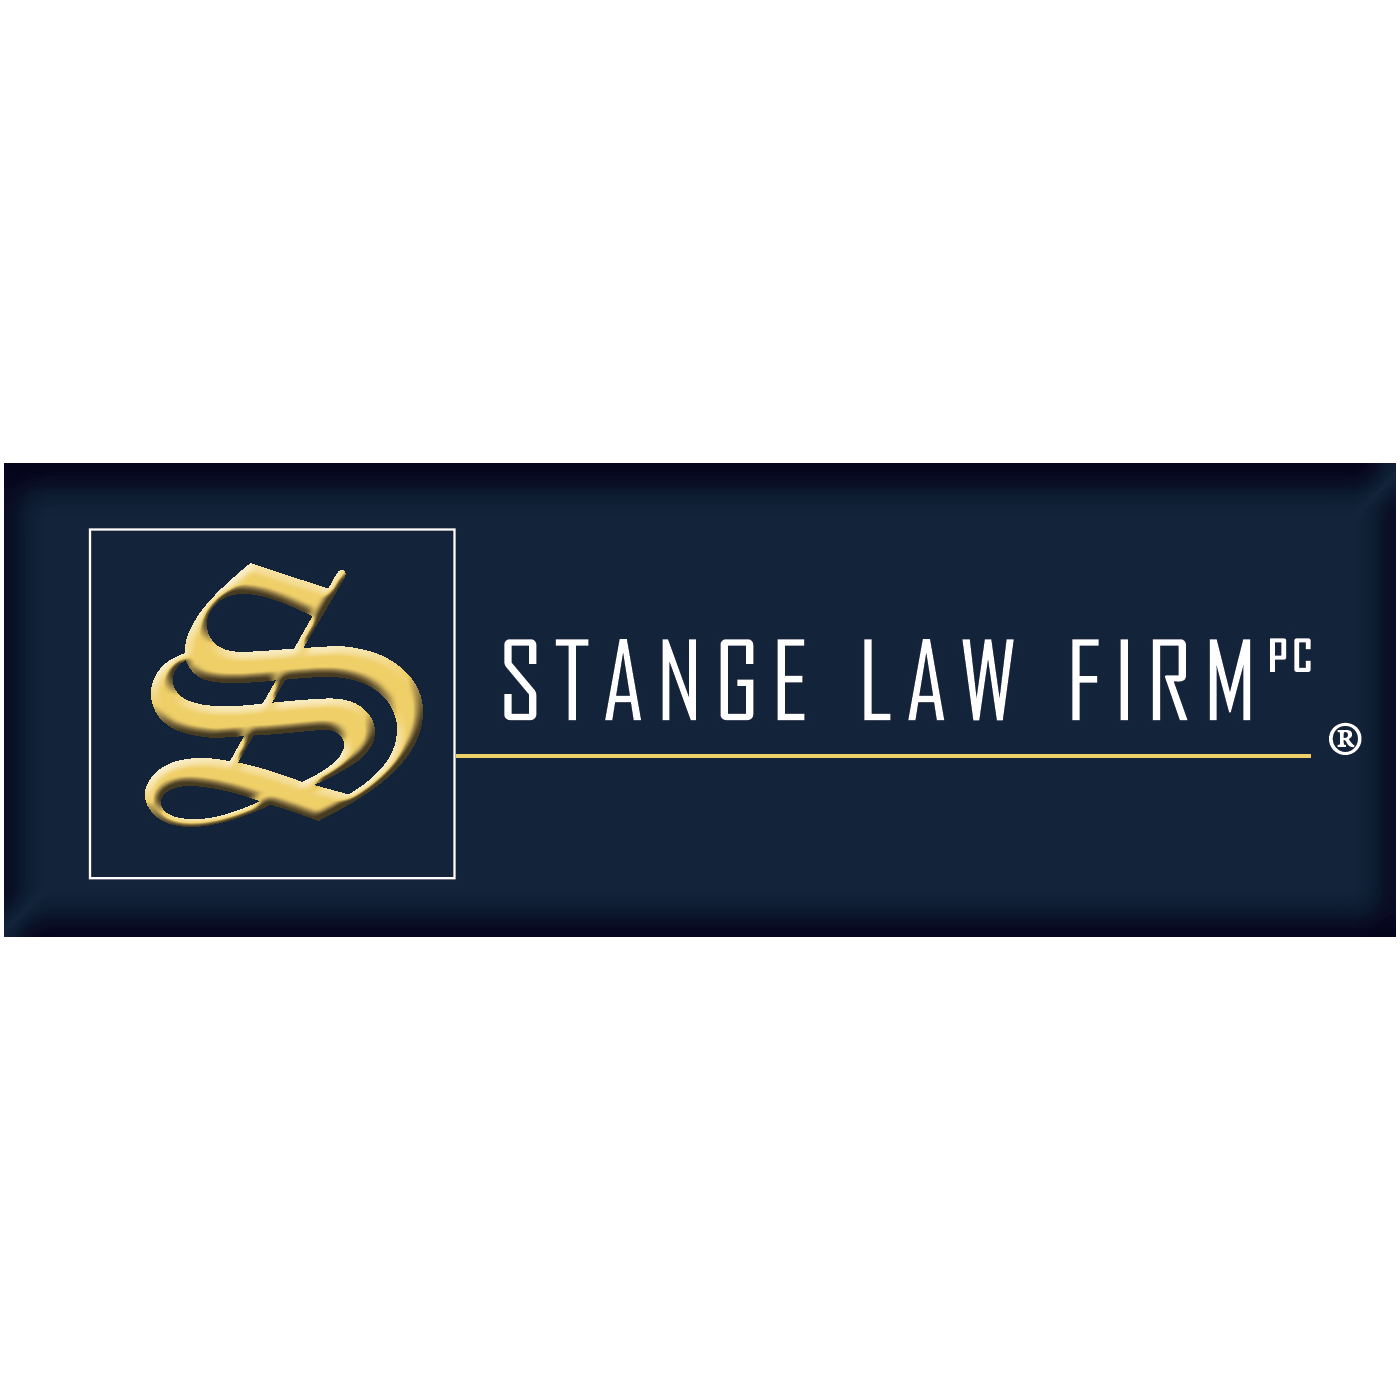 Law firm Missouri lawyers